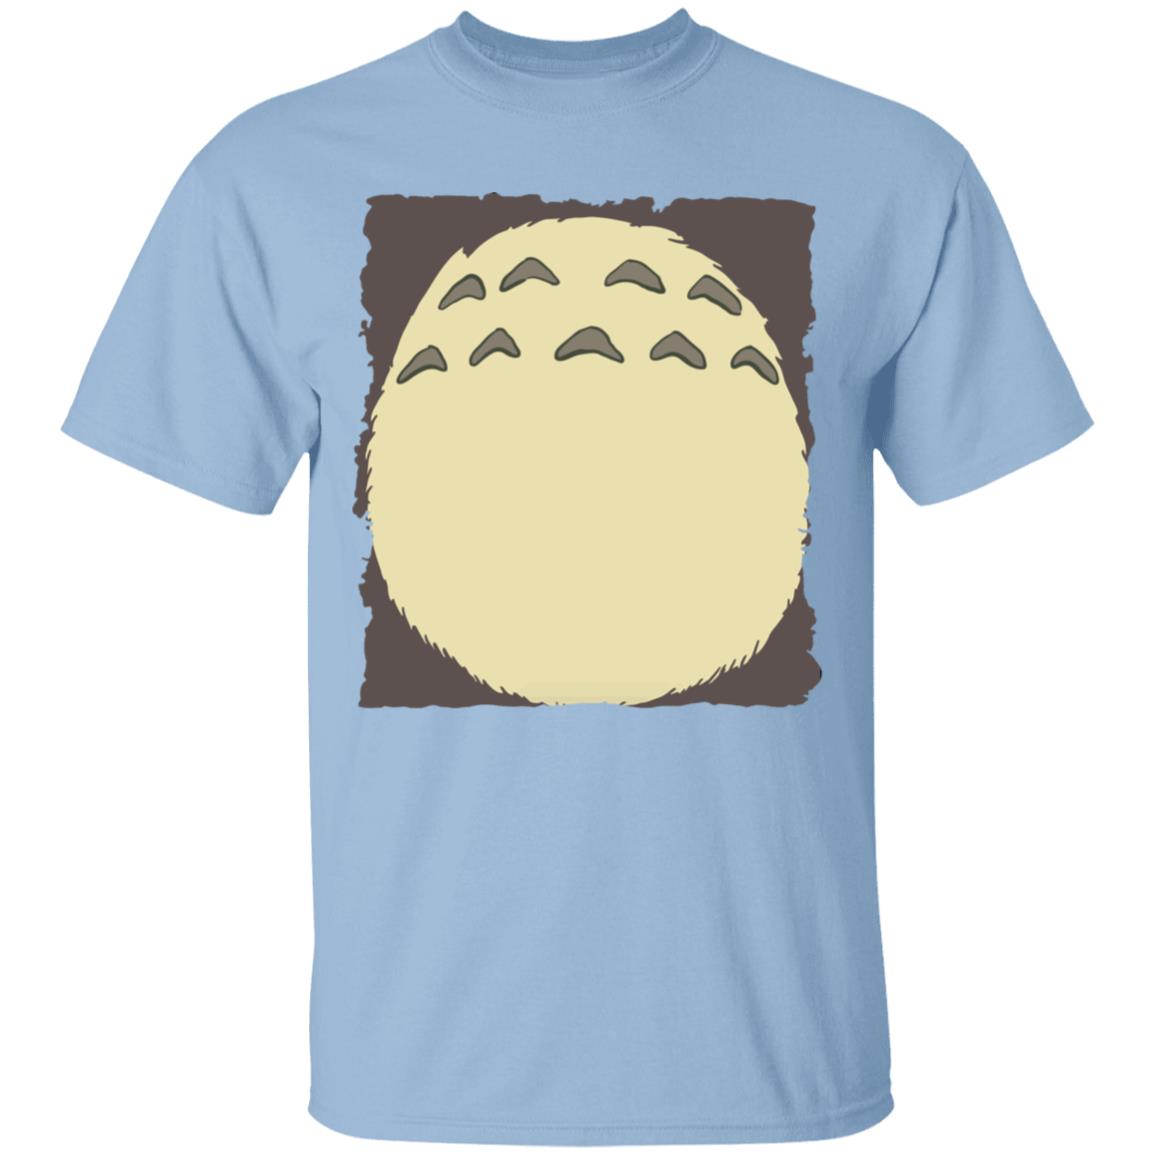 My Neighbor Totoro – Totoro Belly T Shirt Ghibli Store ghibli.store